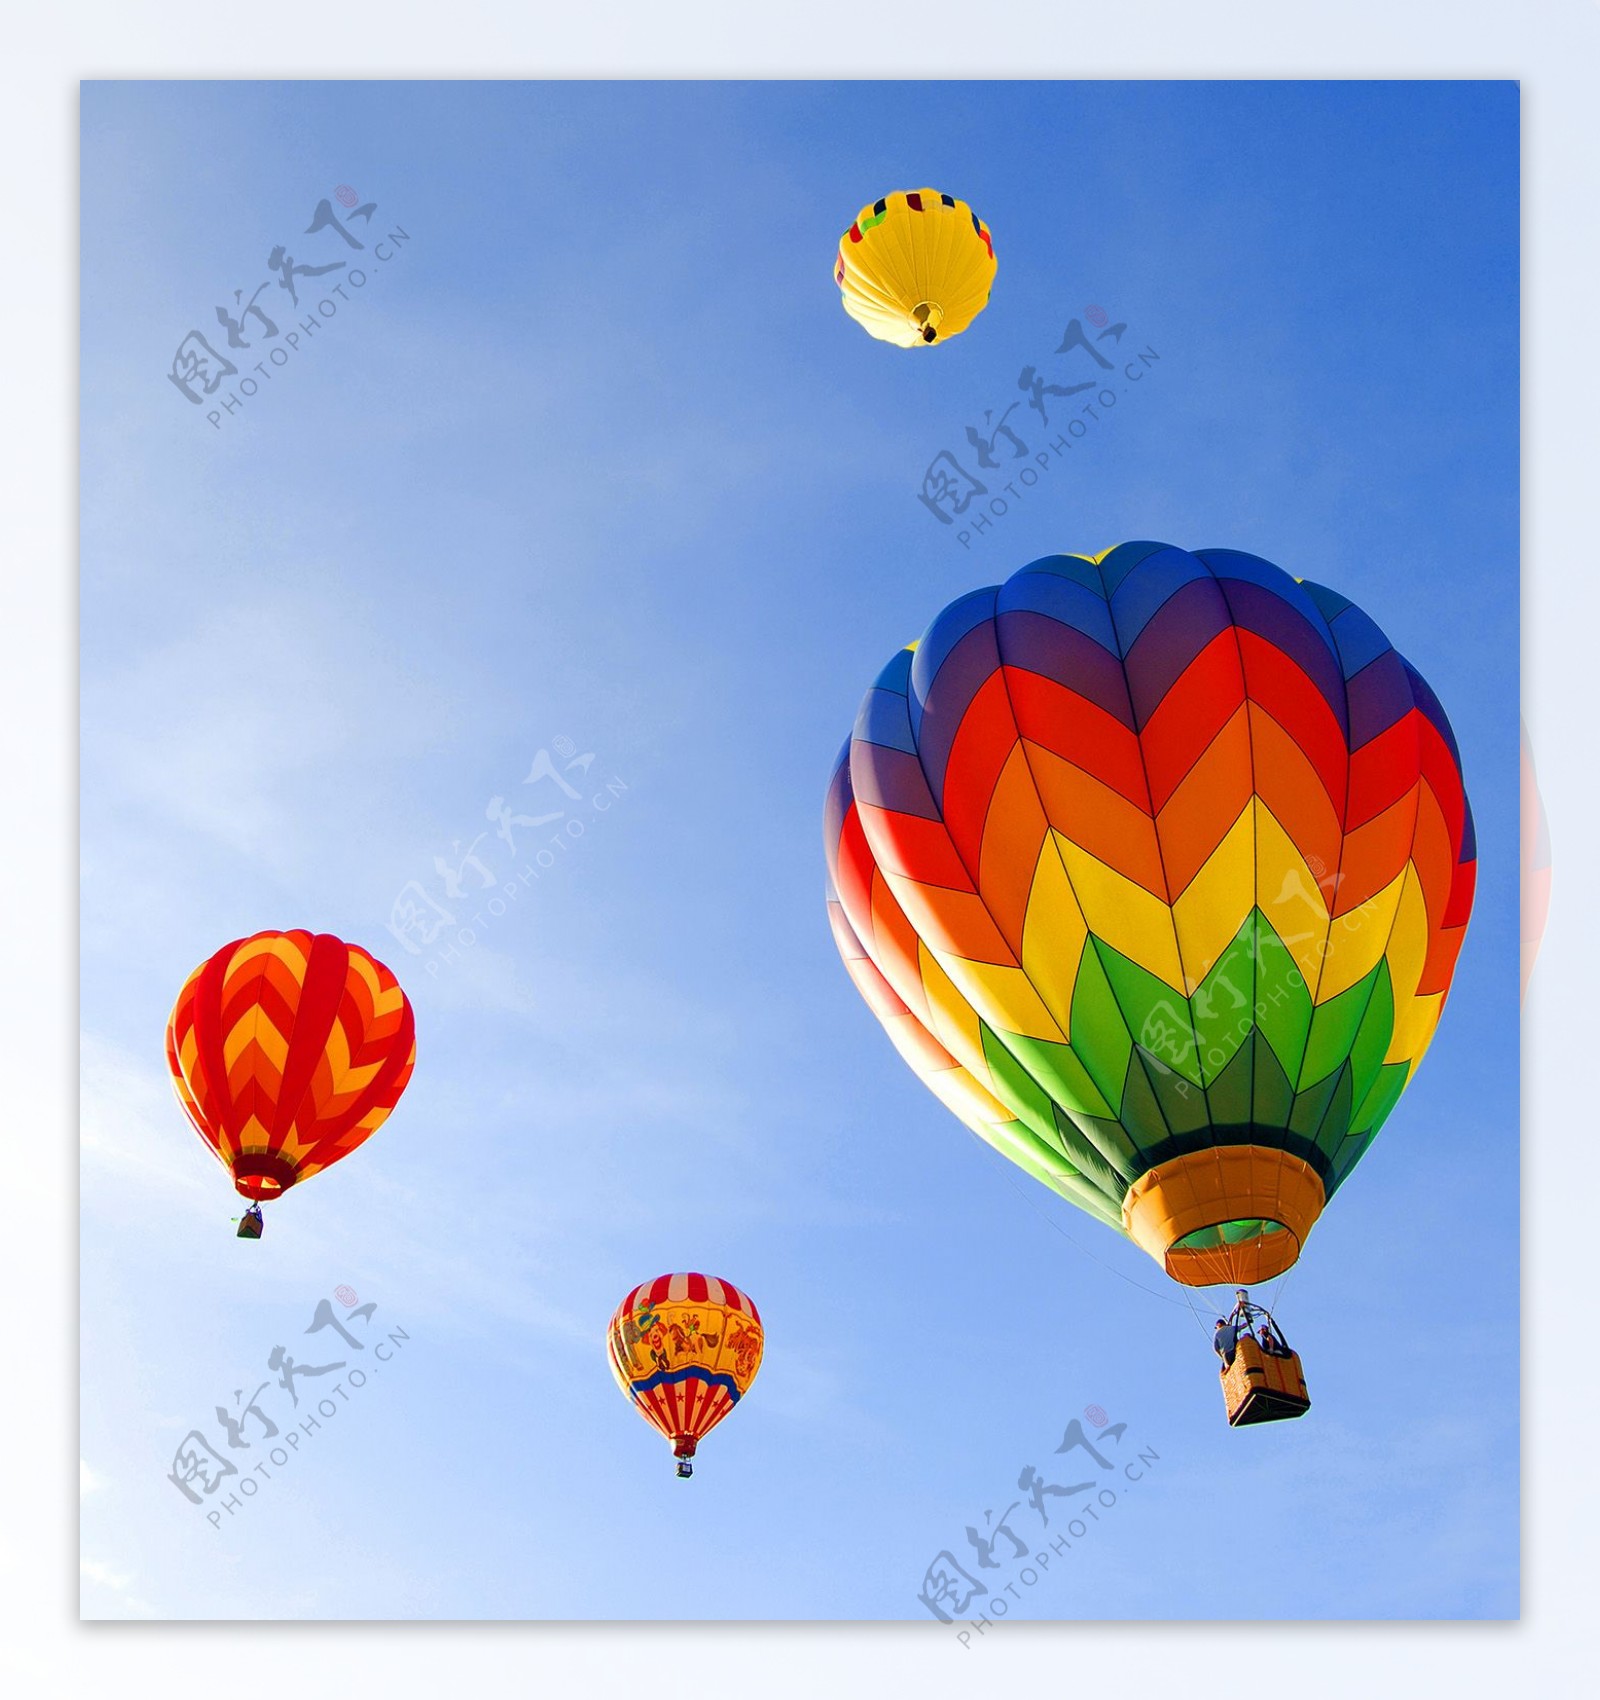 天空中飘浮着的热气球